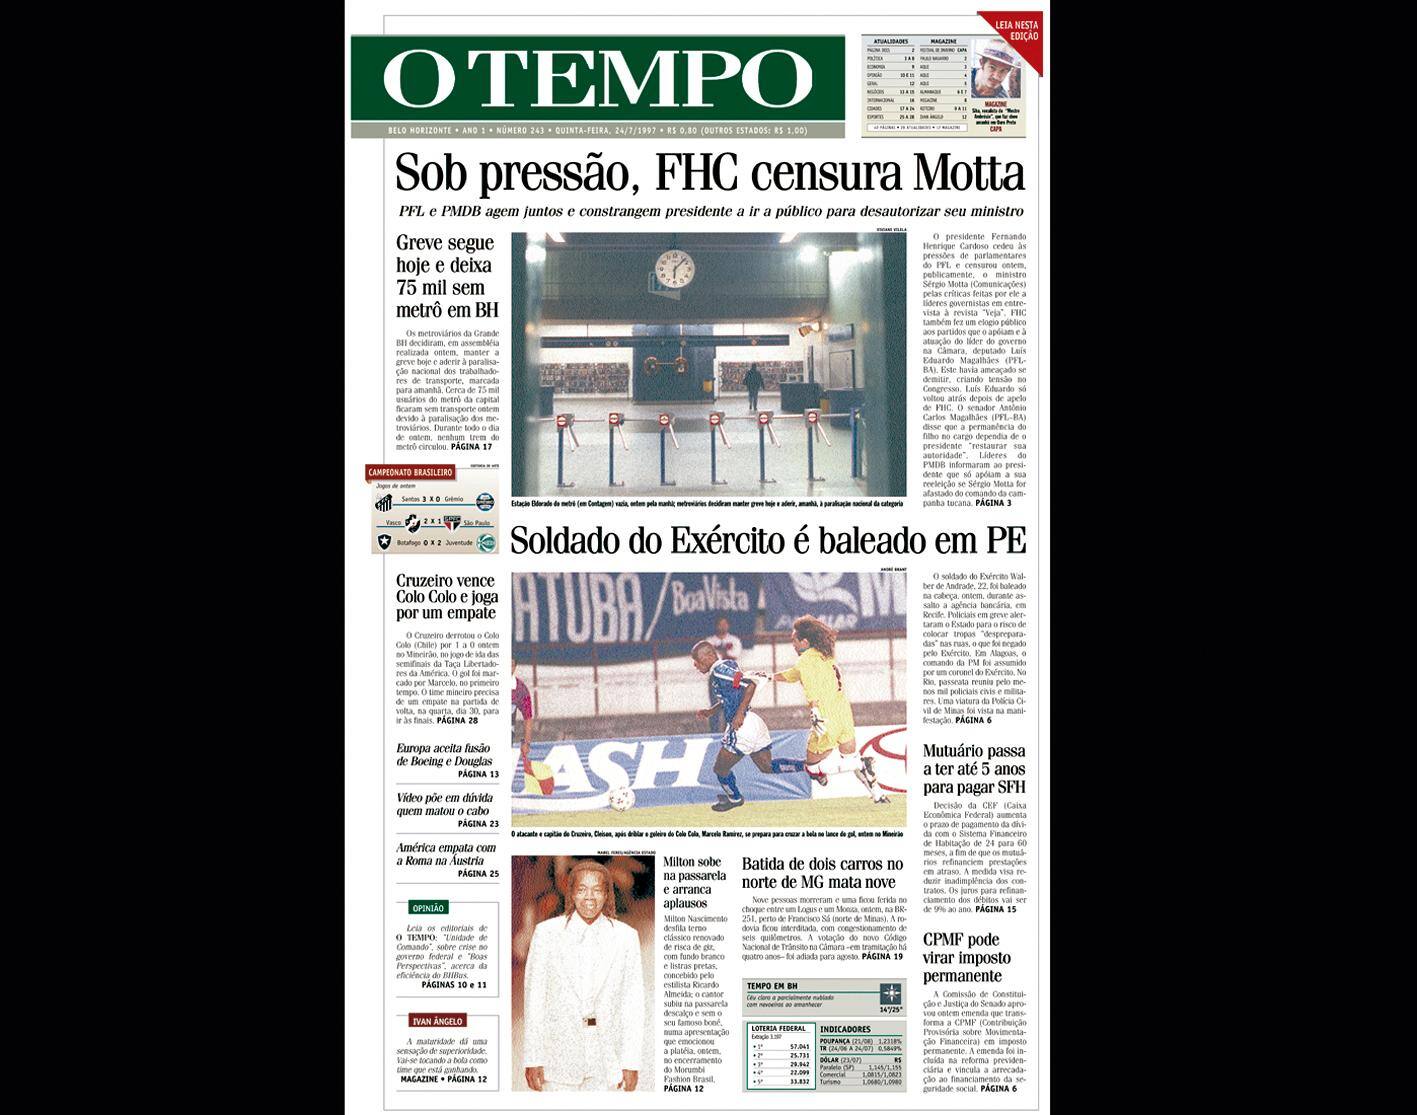 Capa do jornal O TEMPO no dia 24.7.1997; resgate do acervo marca as comemorações dos 25 anos da publicação